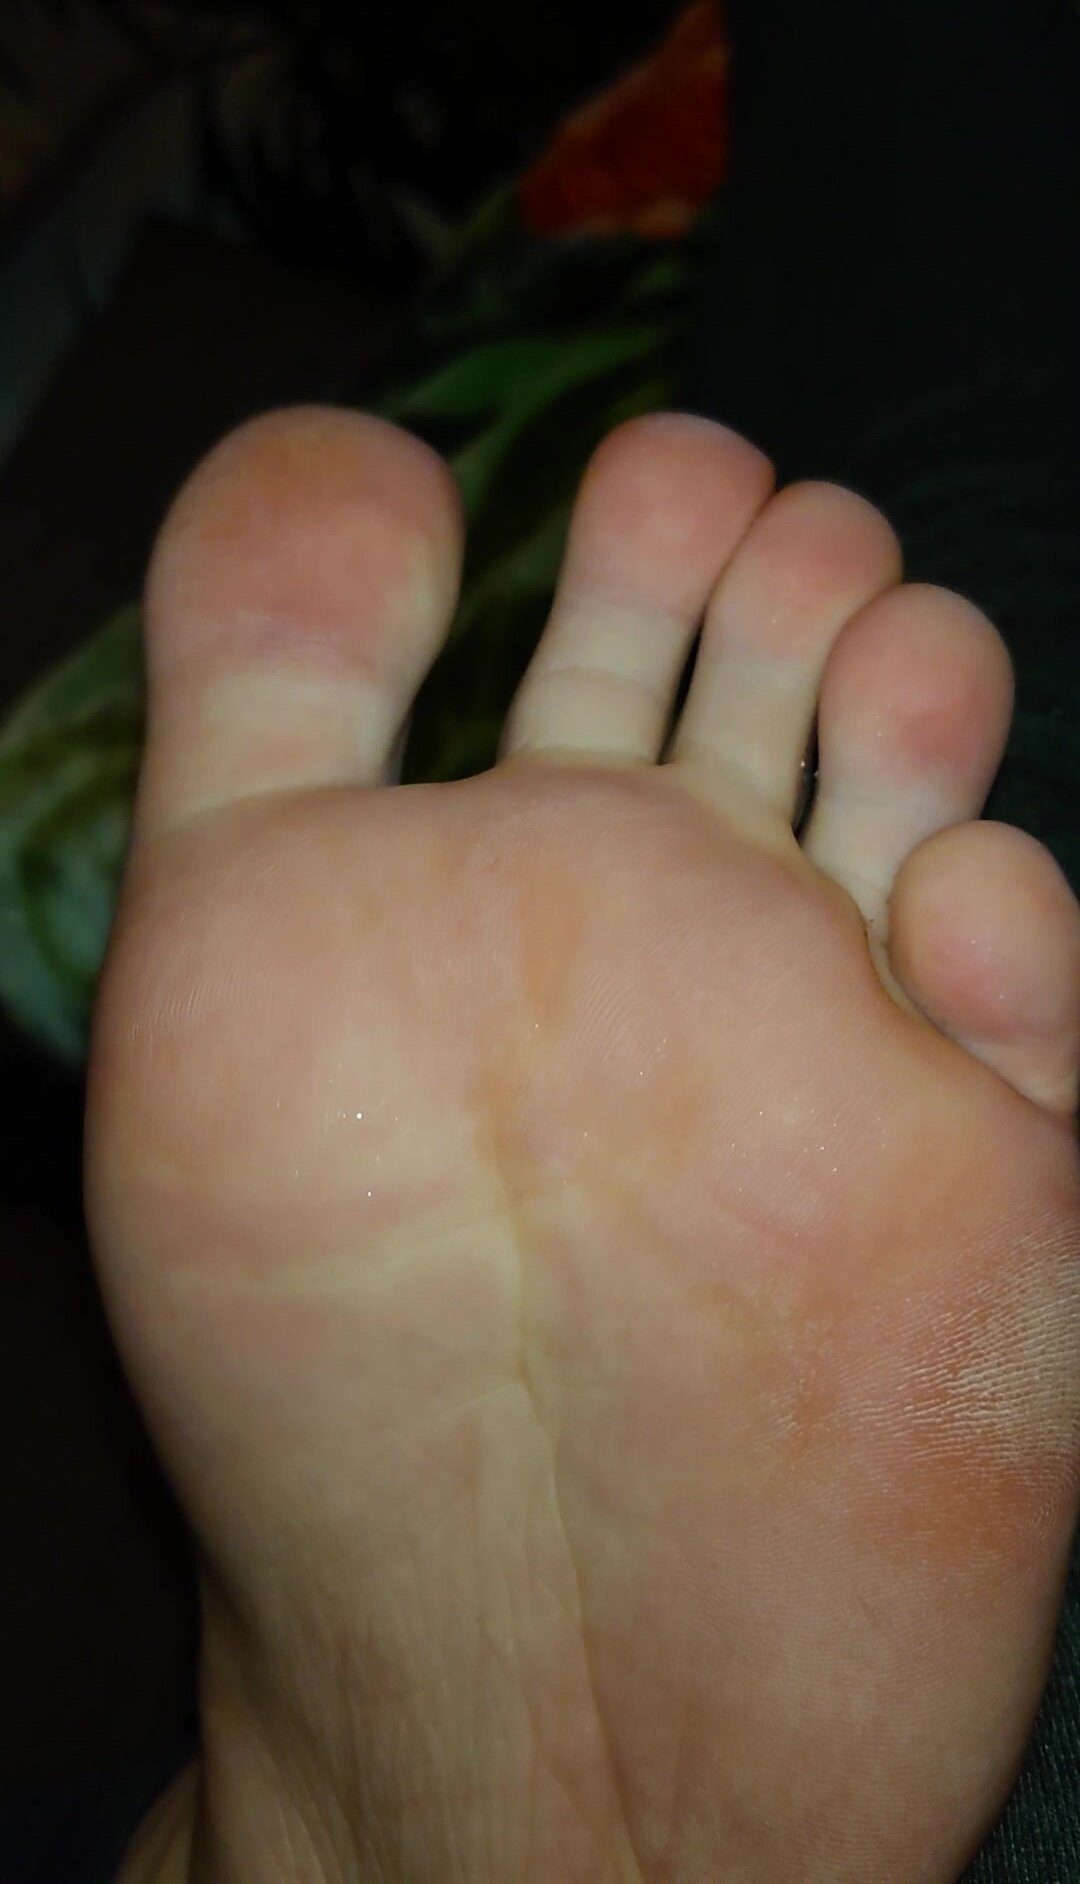 nasty 23yo 4 days unwashed feet sweaty smelly male